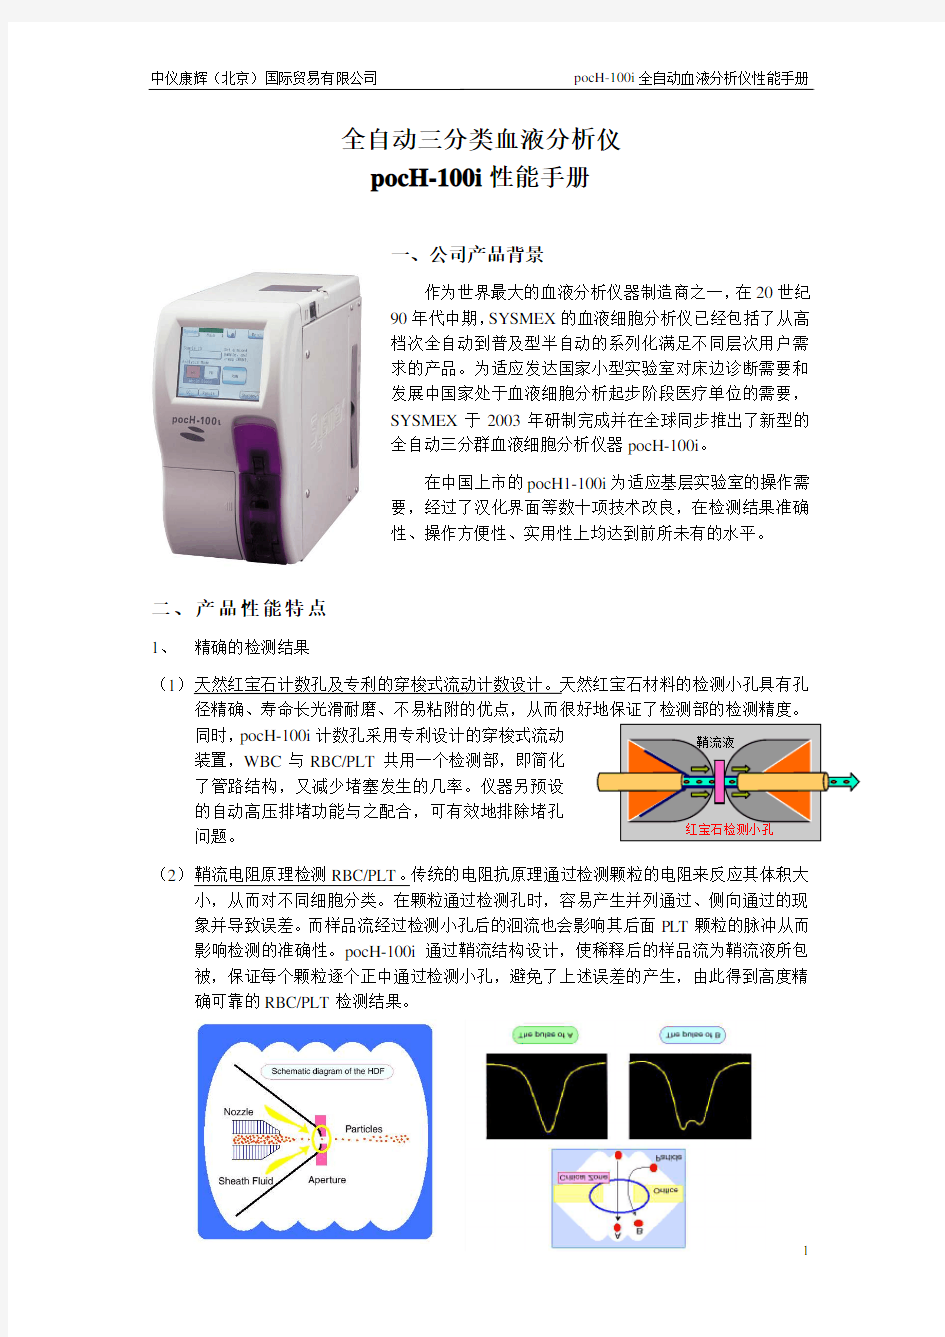 pocH-100i全自动三分类血液分析仪